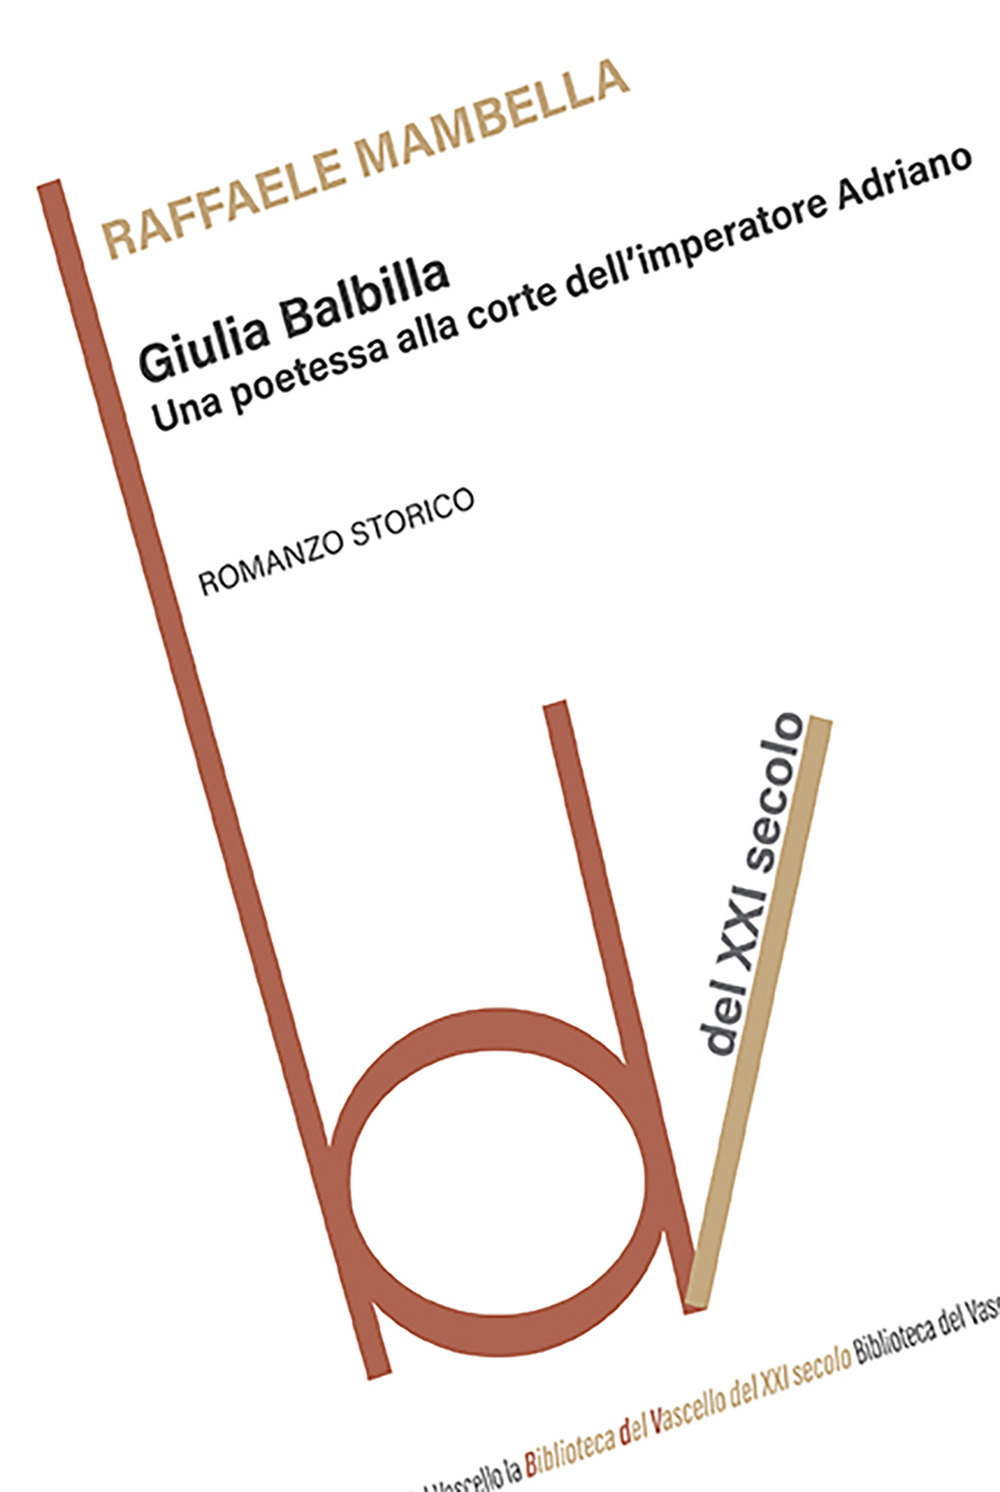 Giulia Balbilla. Una poetessa alla corte dell'imperatore Adriano